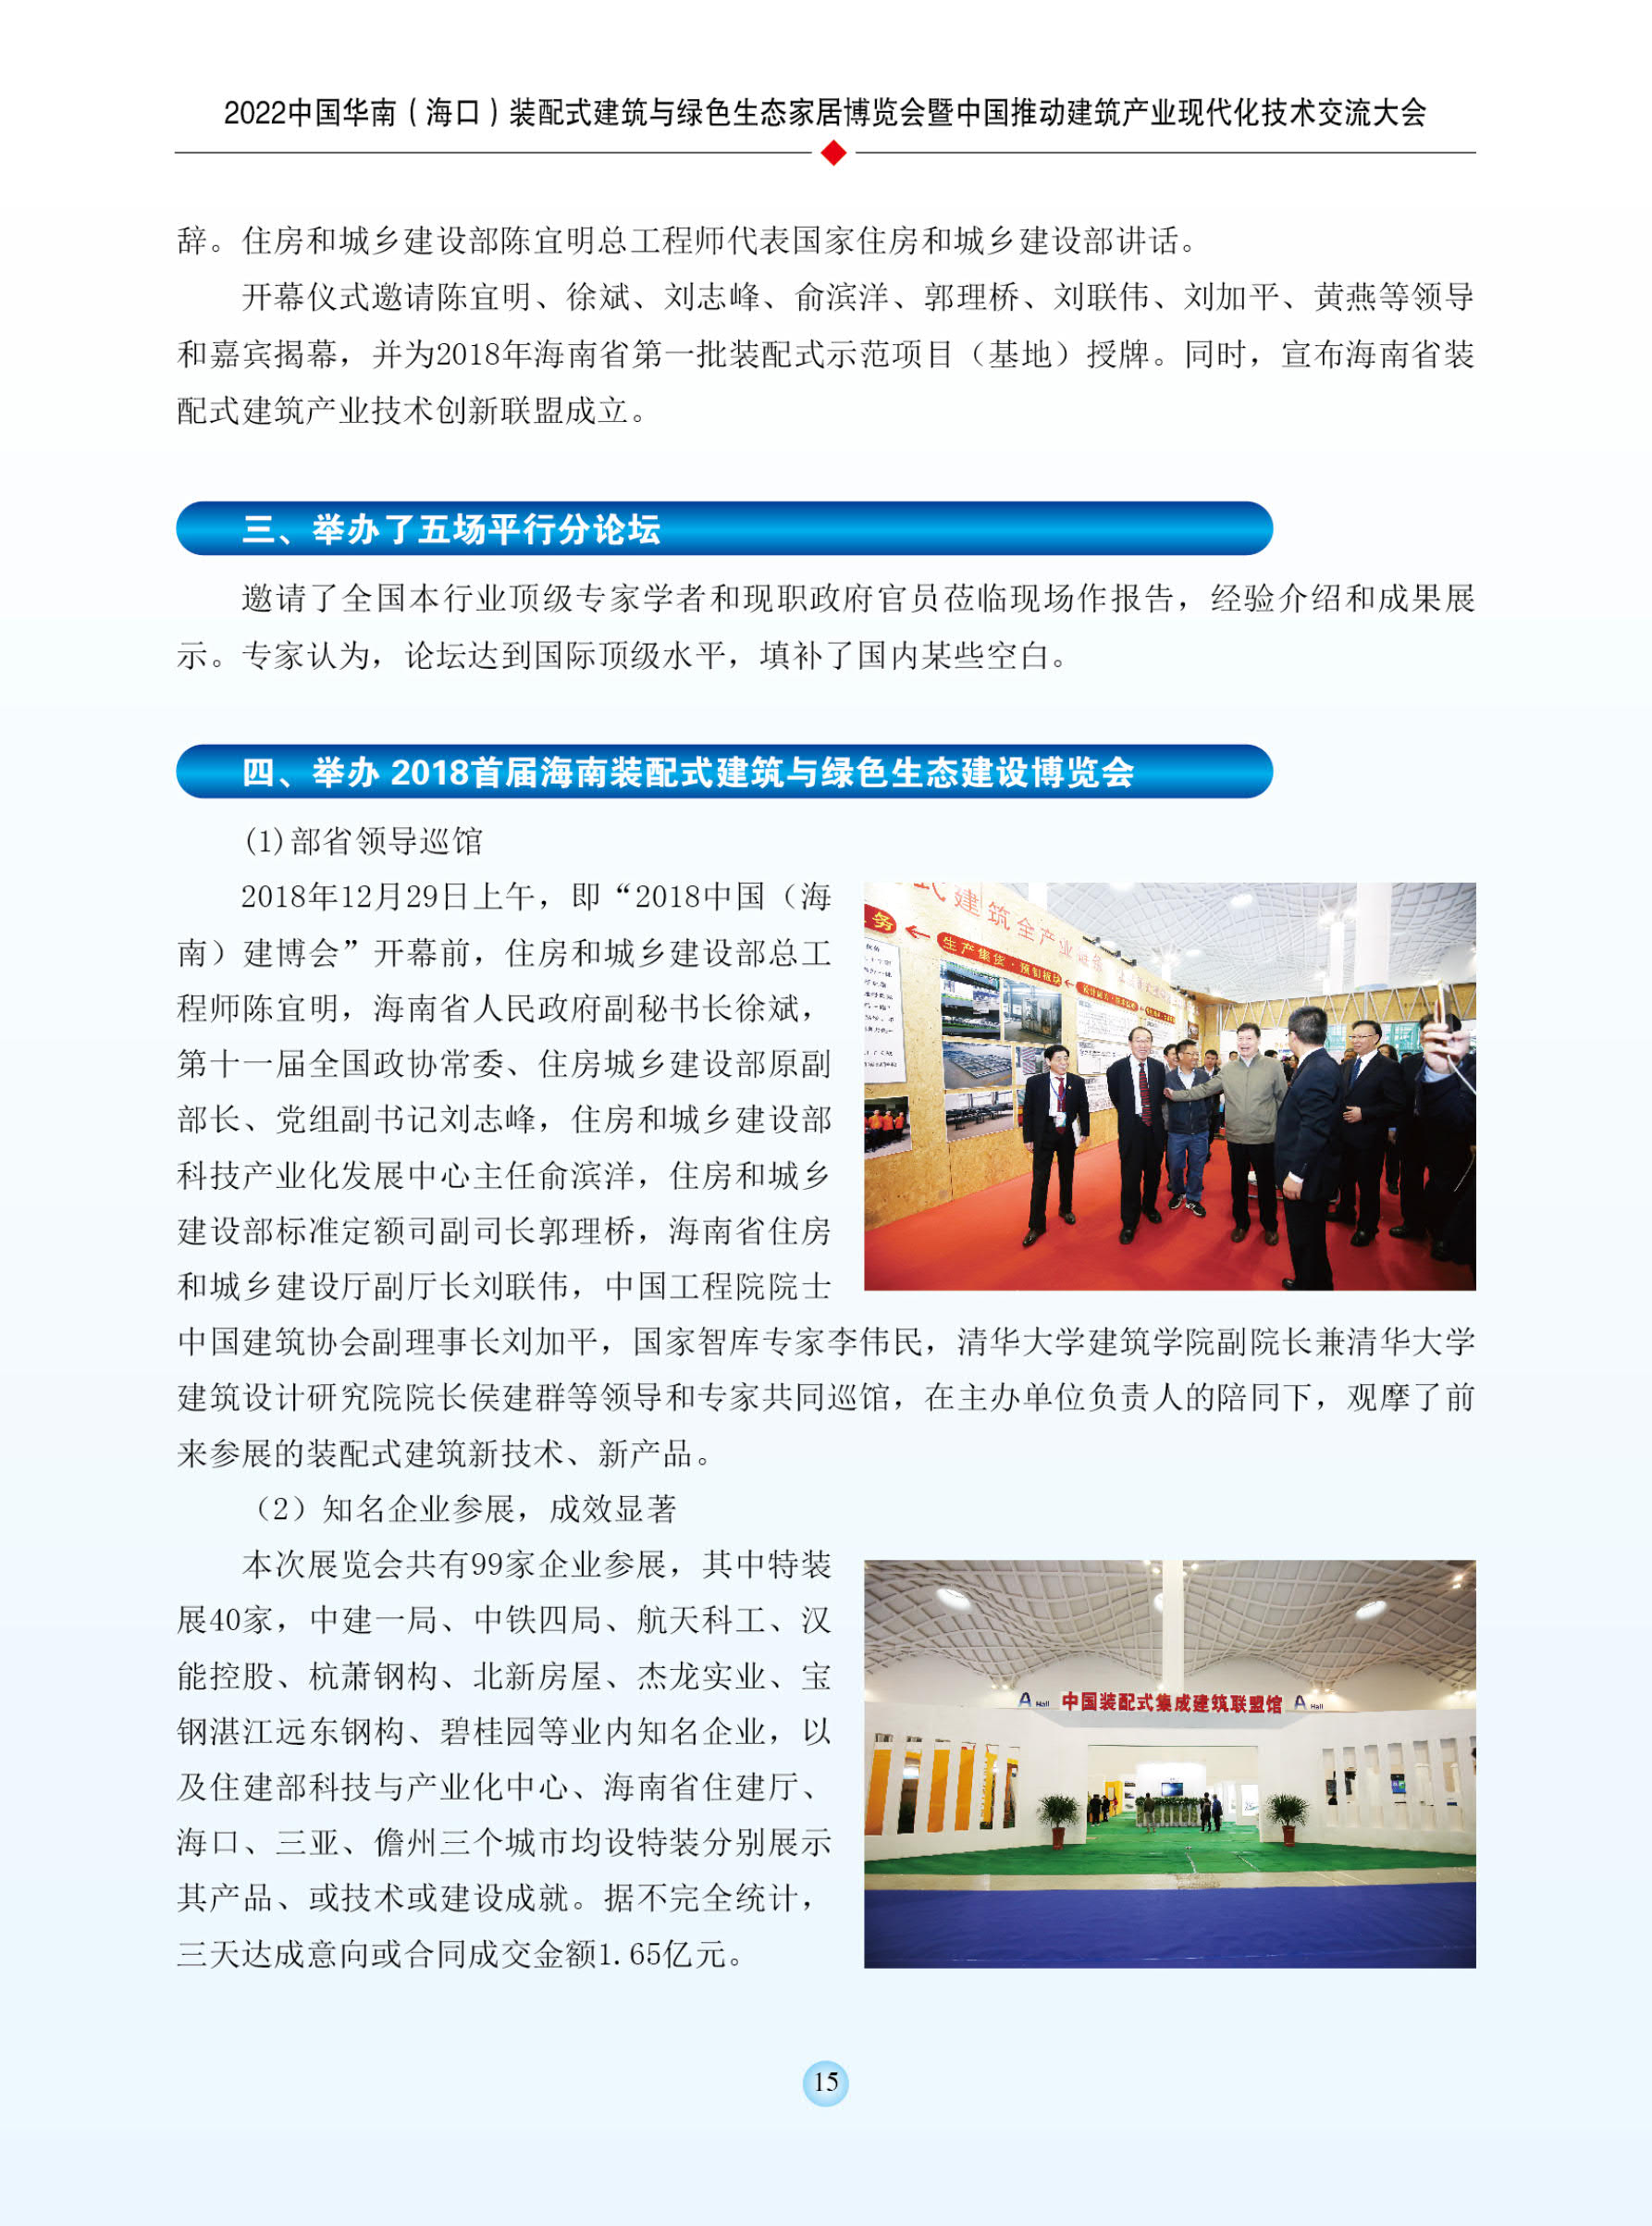 2022中国华南(海口)装配式建筑与绿色生态家居博览会